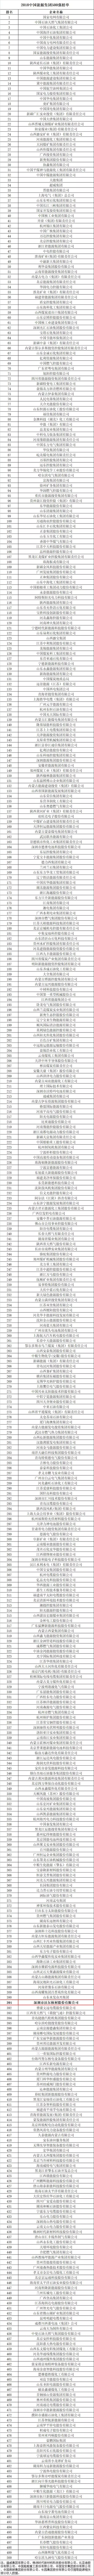 博鱼sport体育官网荣登2018中国能源集团500强榜单3.jpg